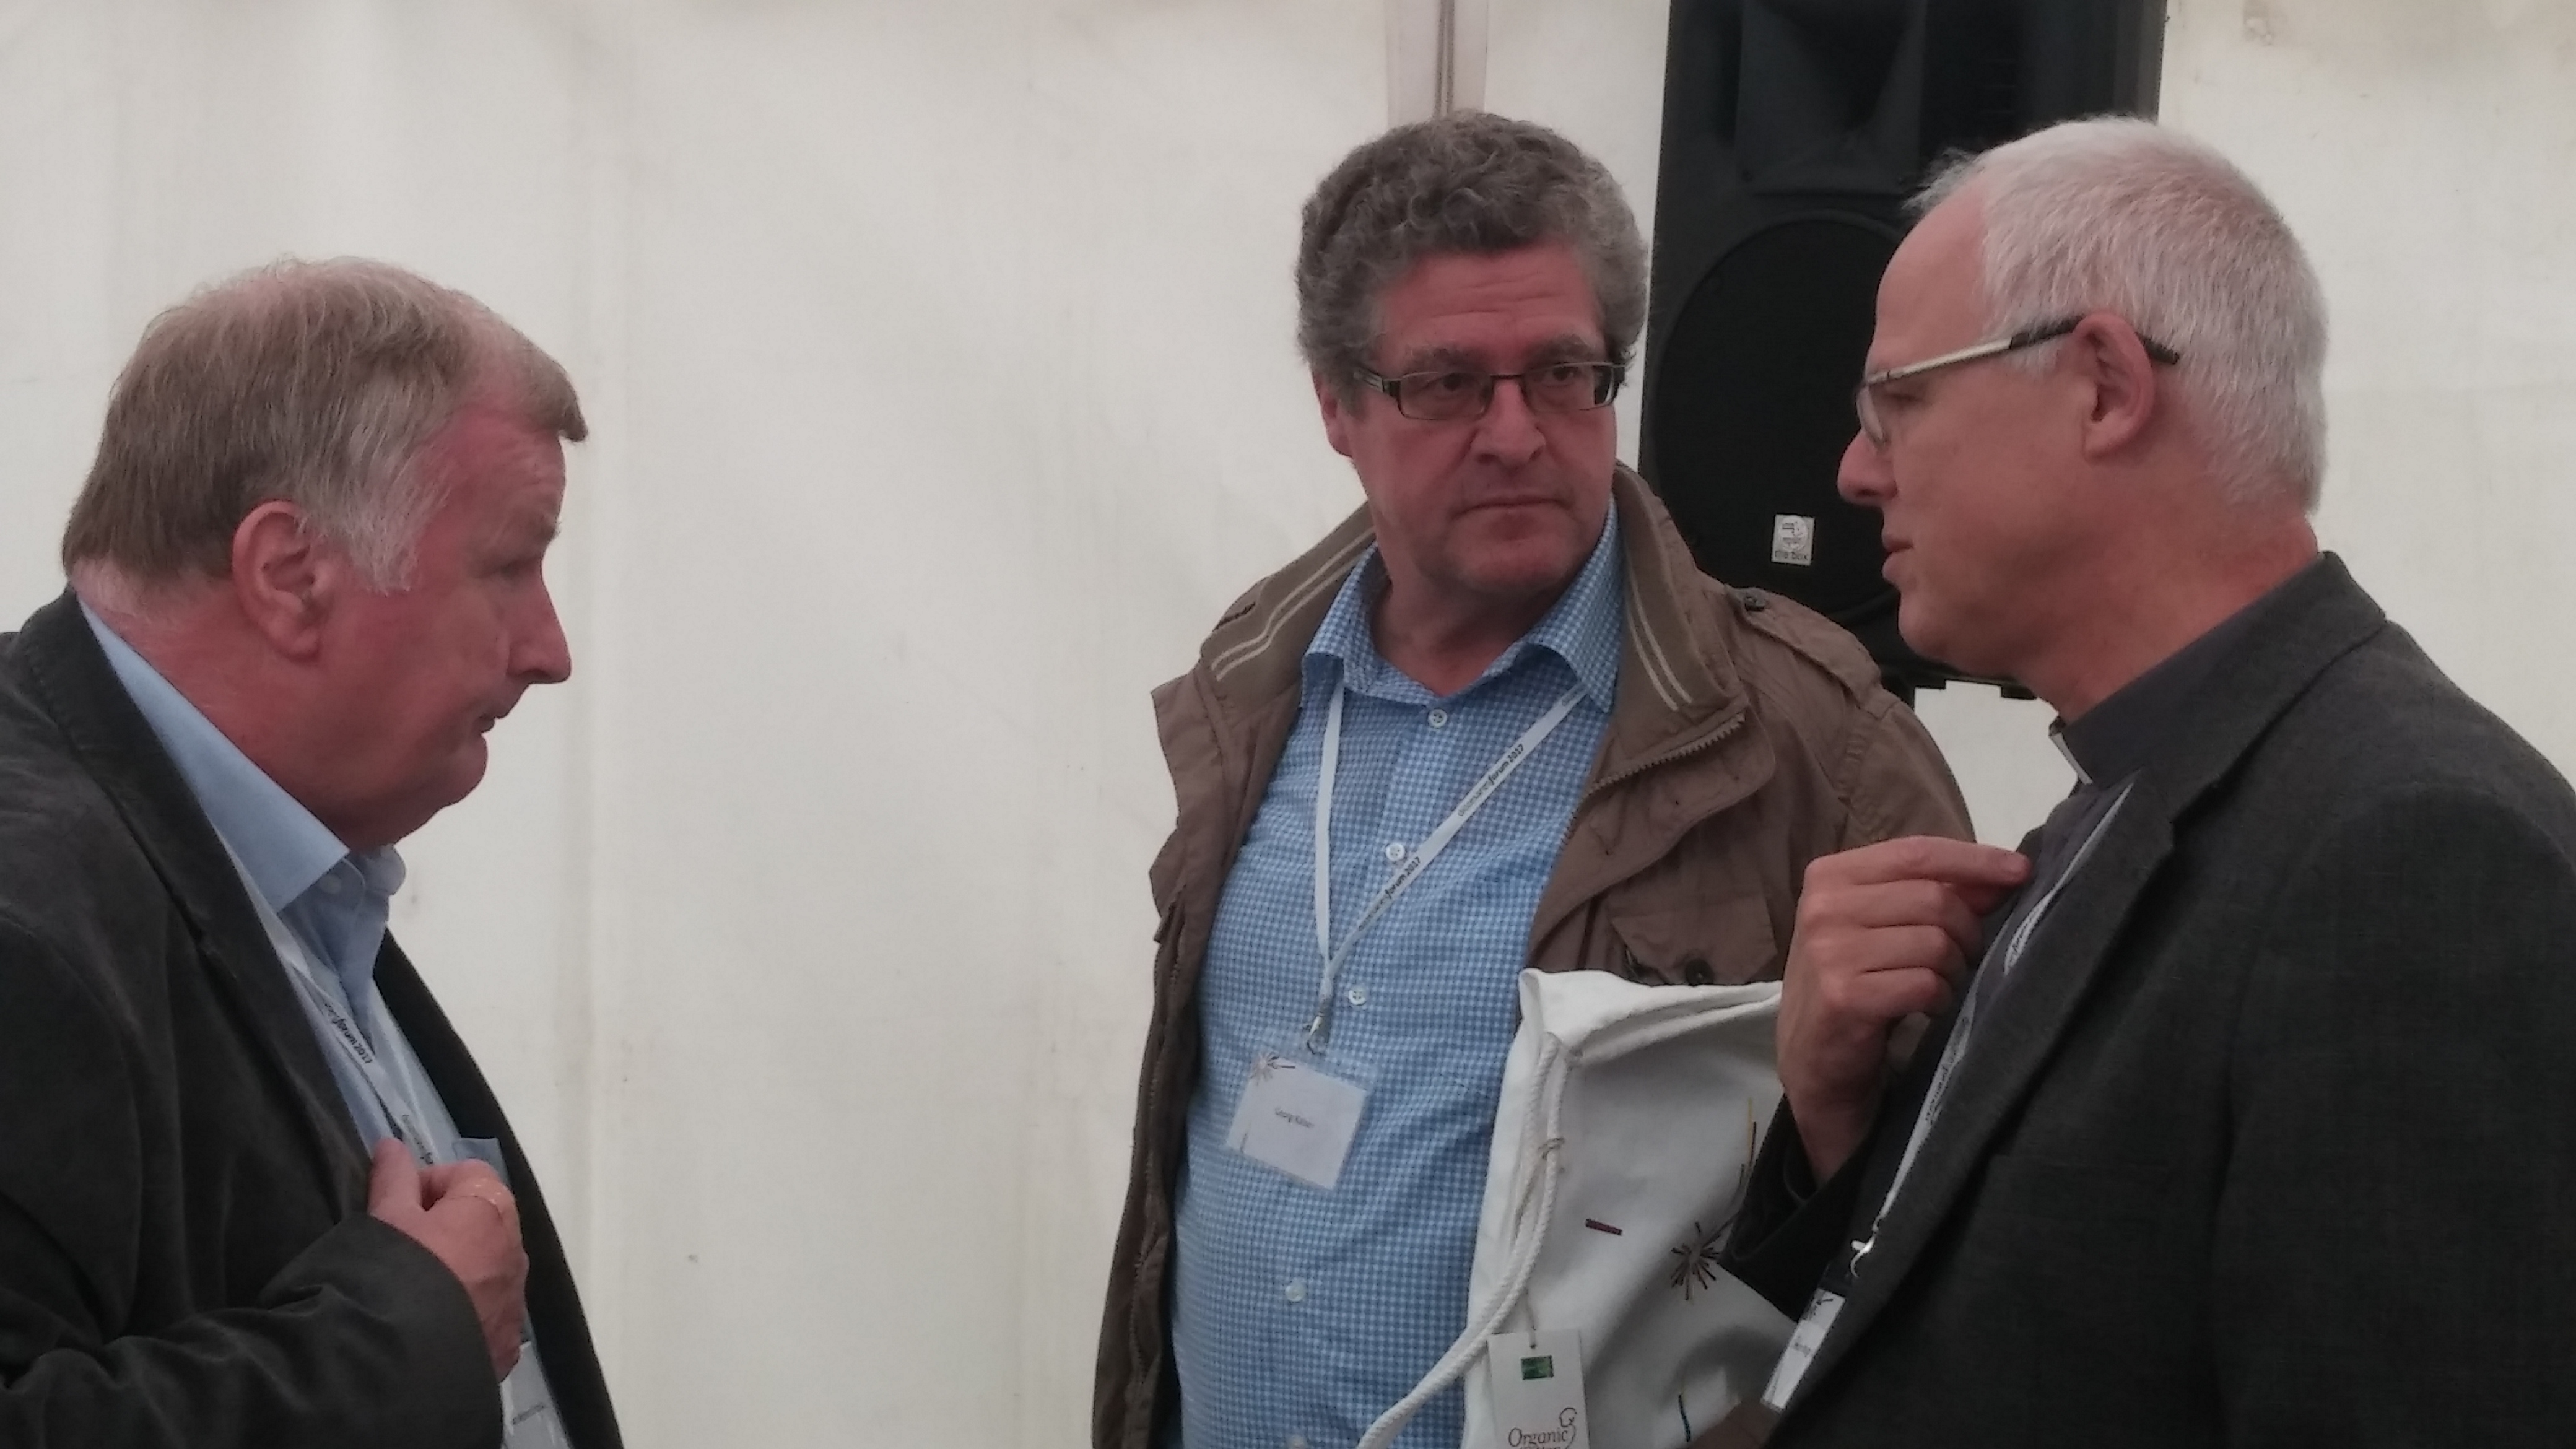 Direktor Wischkony im angeregten Gespräch mit zwei Teilnehmern